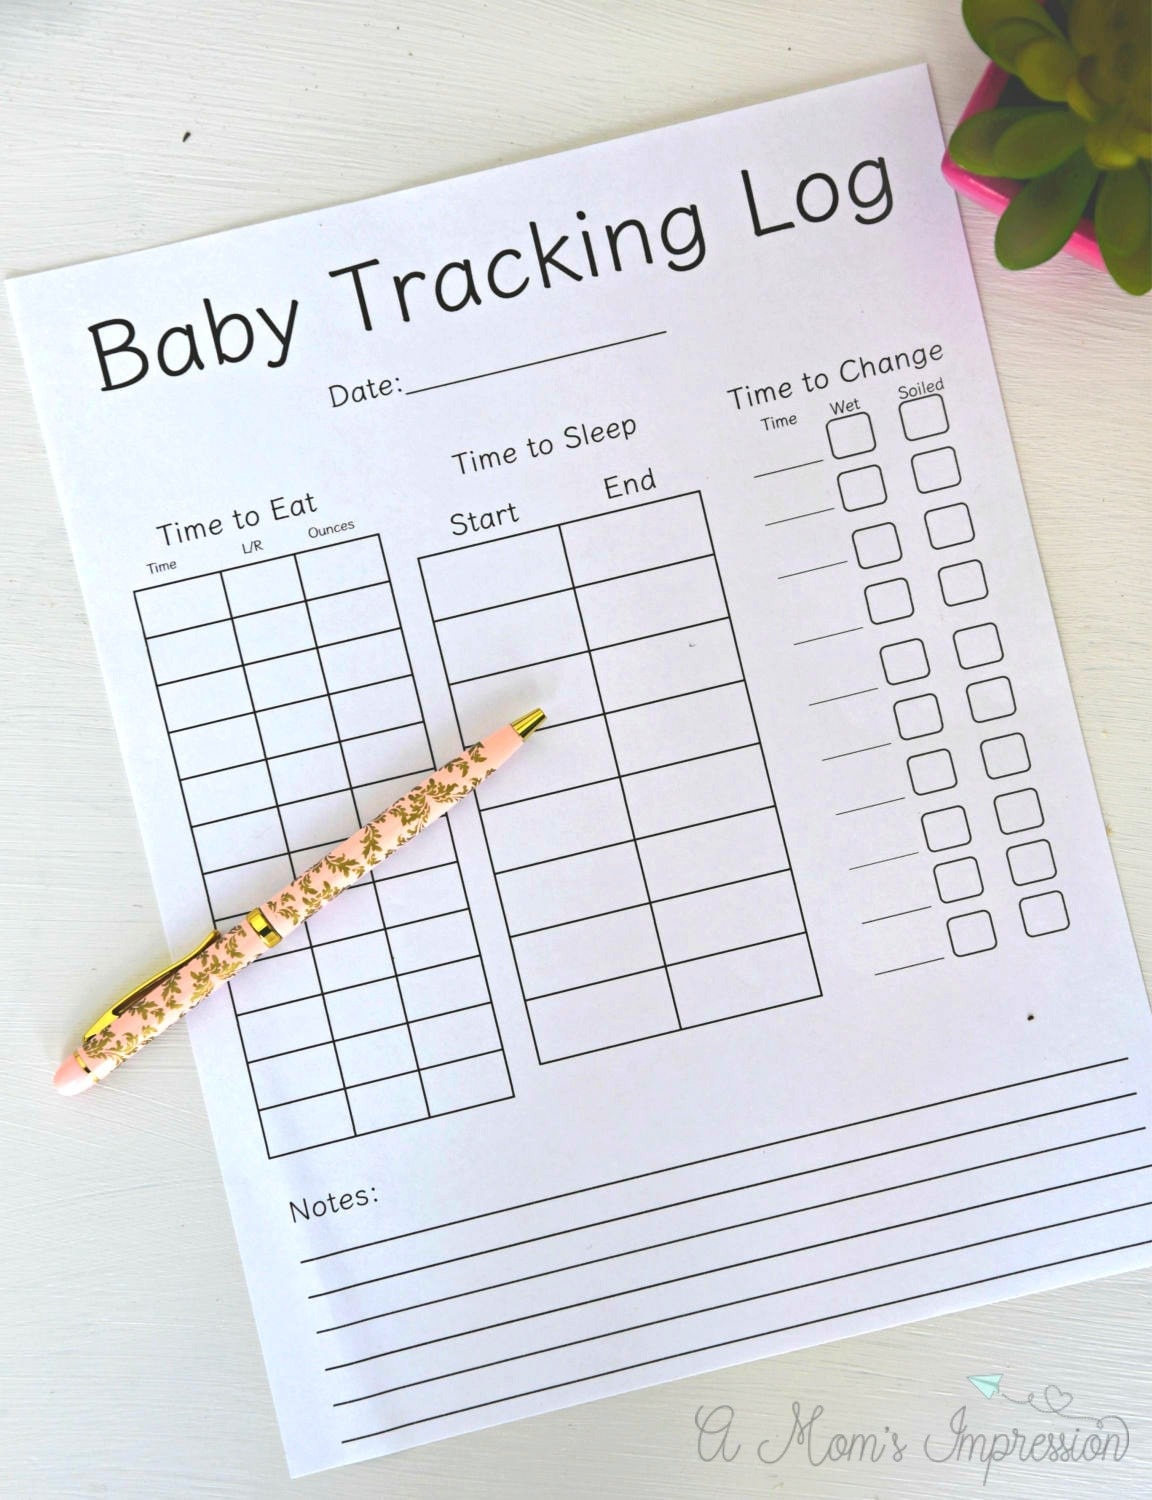 Baby Tracking Log